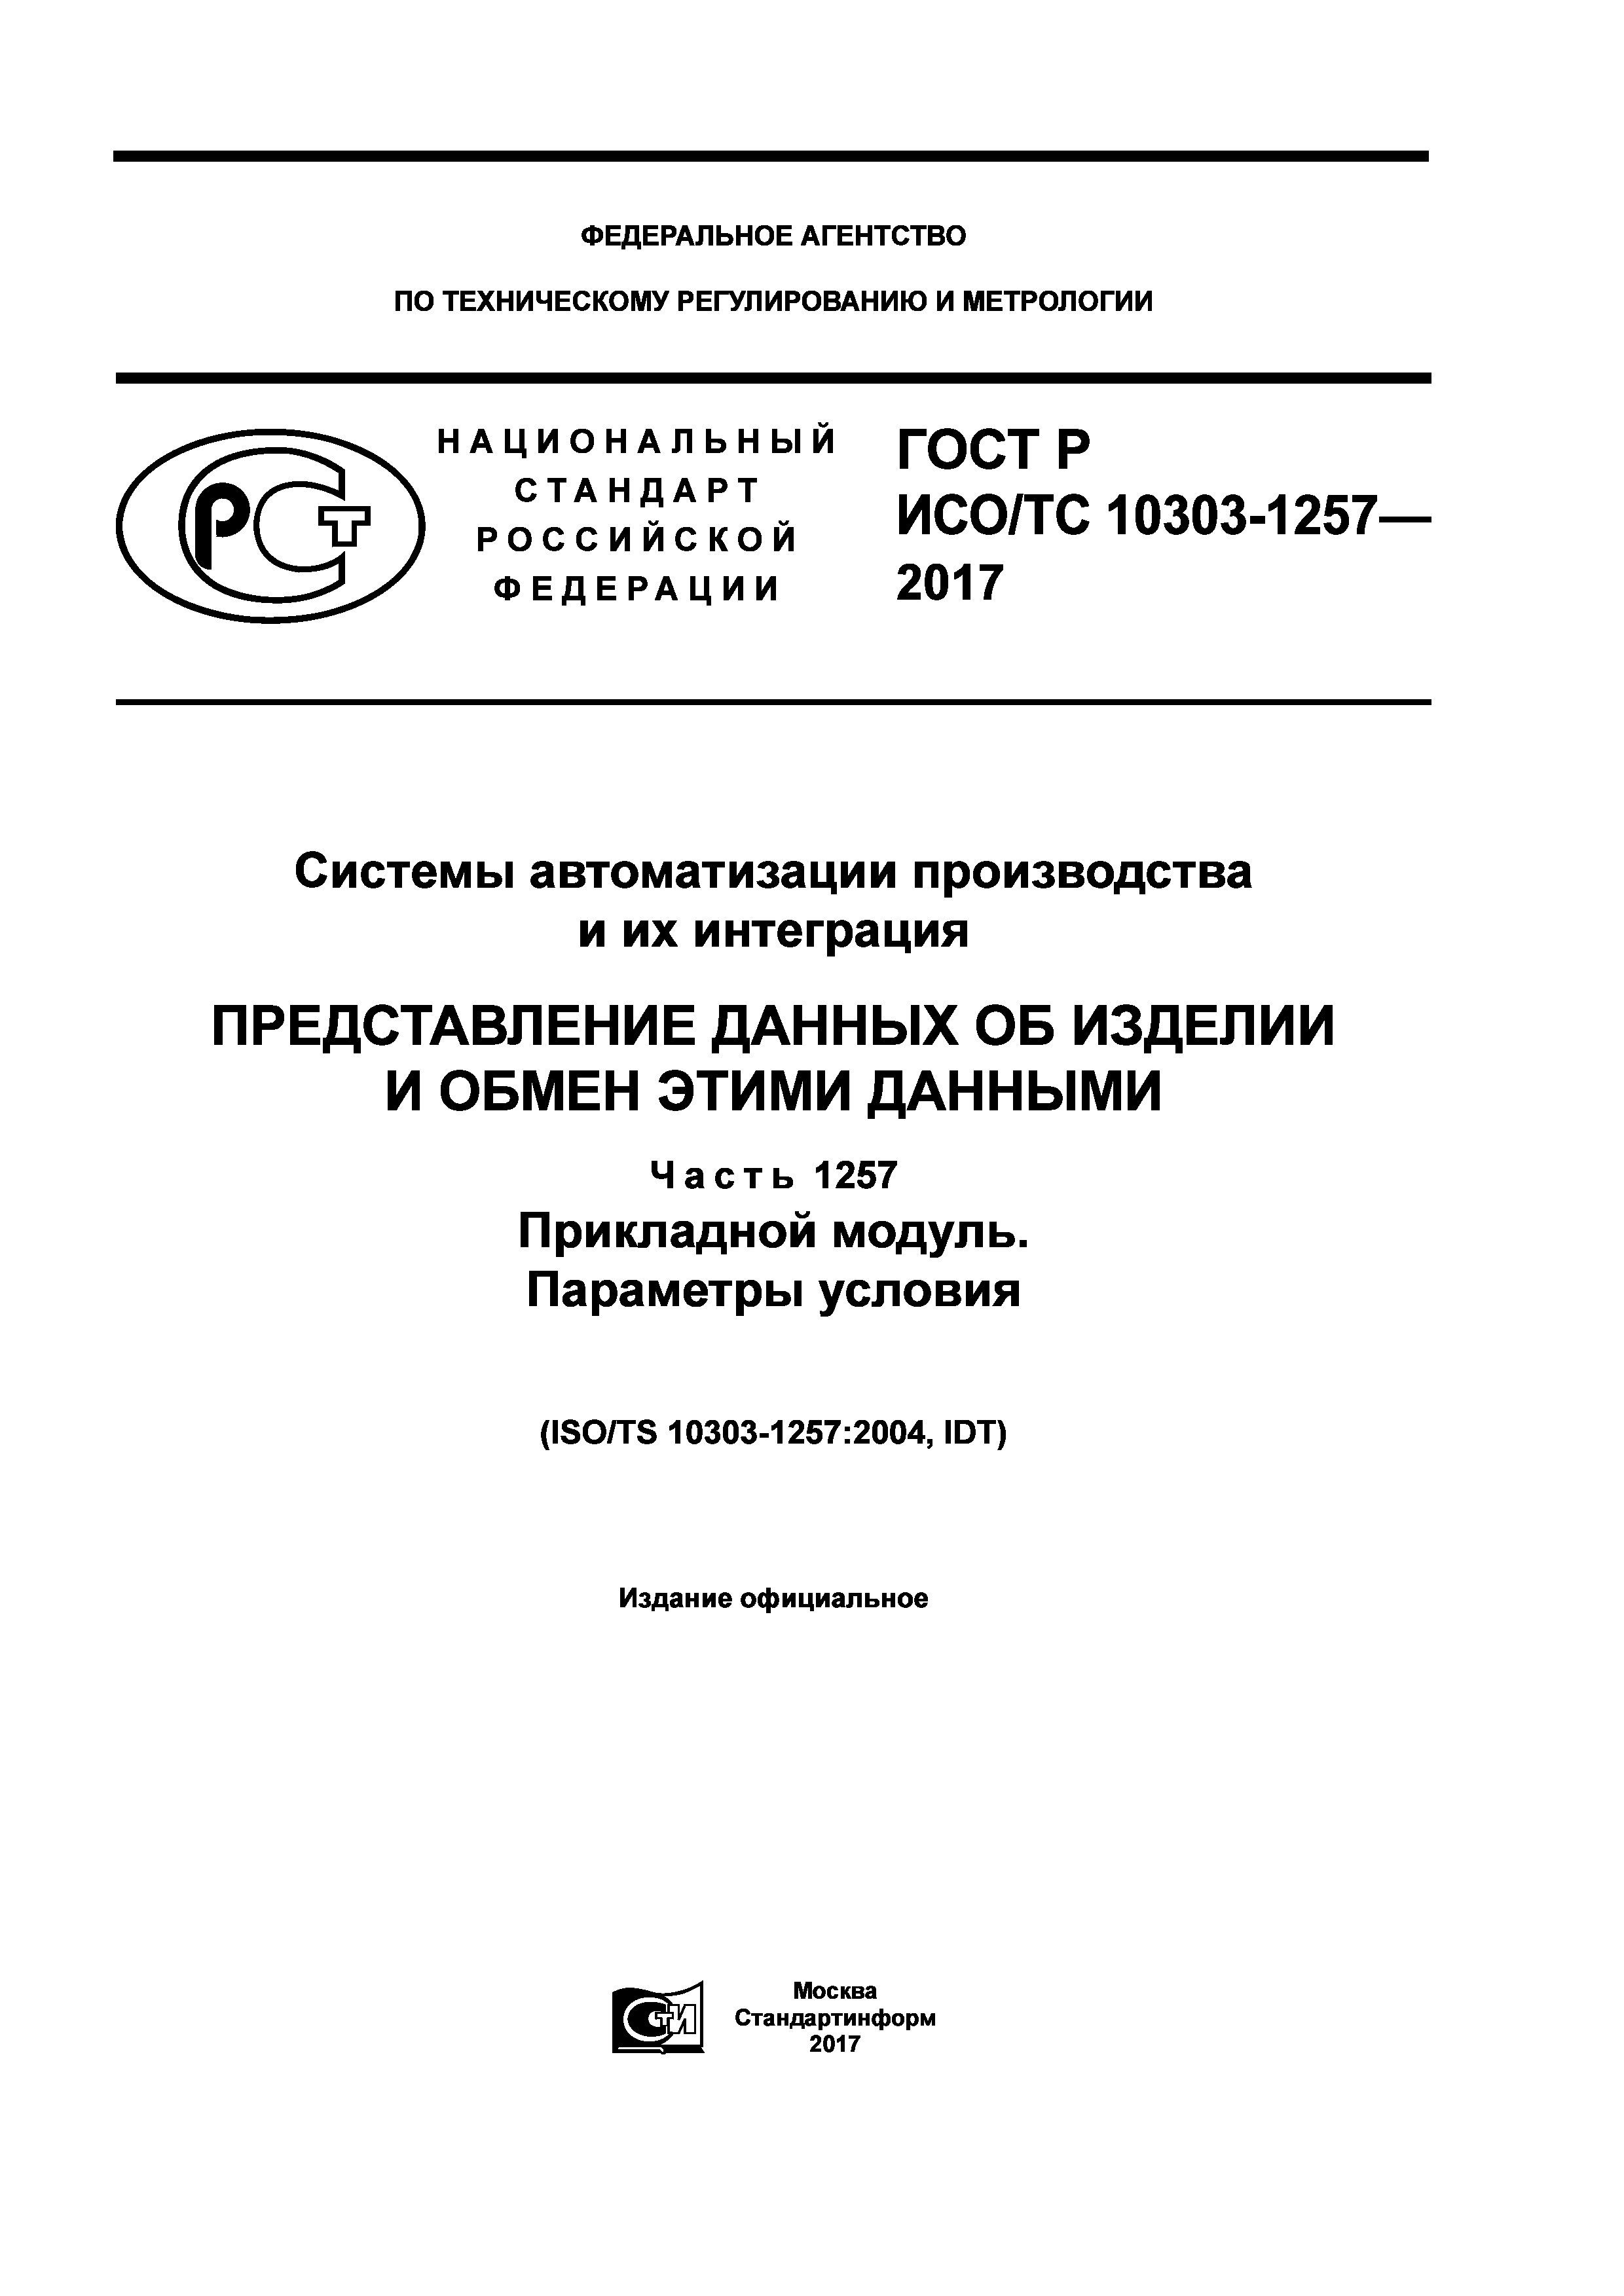 ГОСТ Р ИСО/ТС 10303-1257-2017